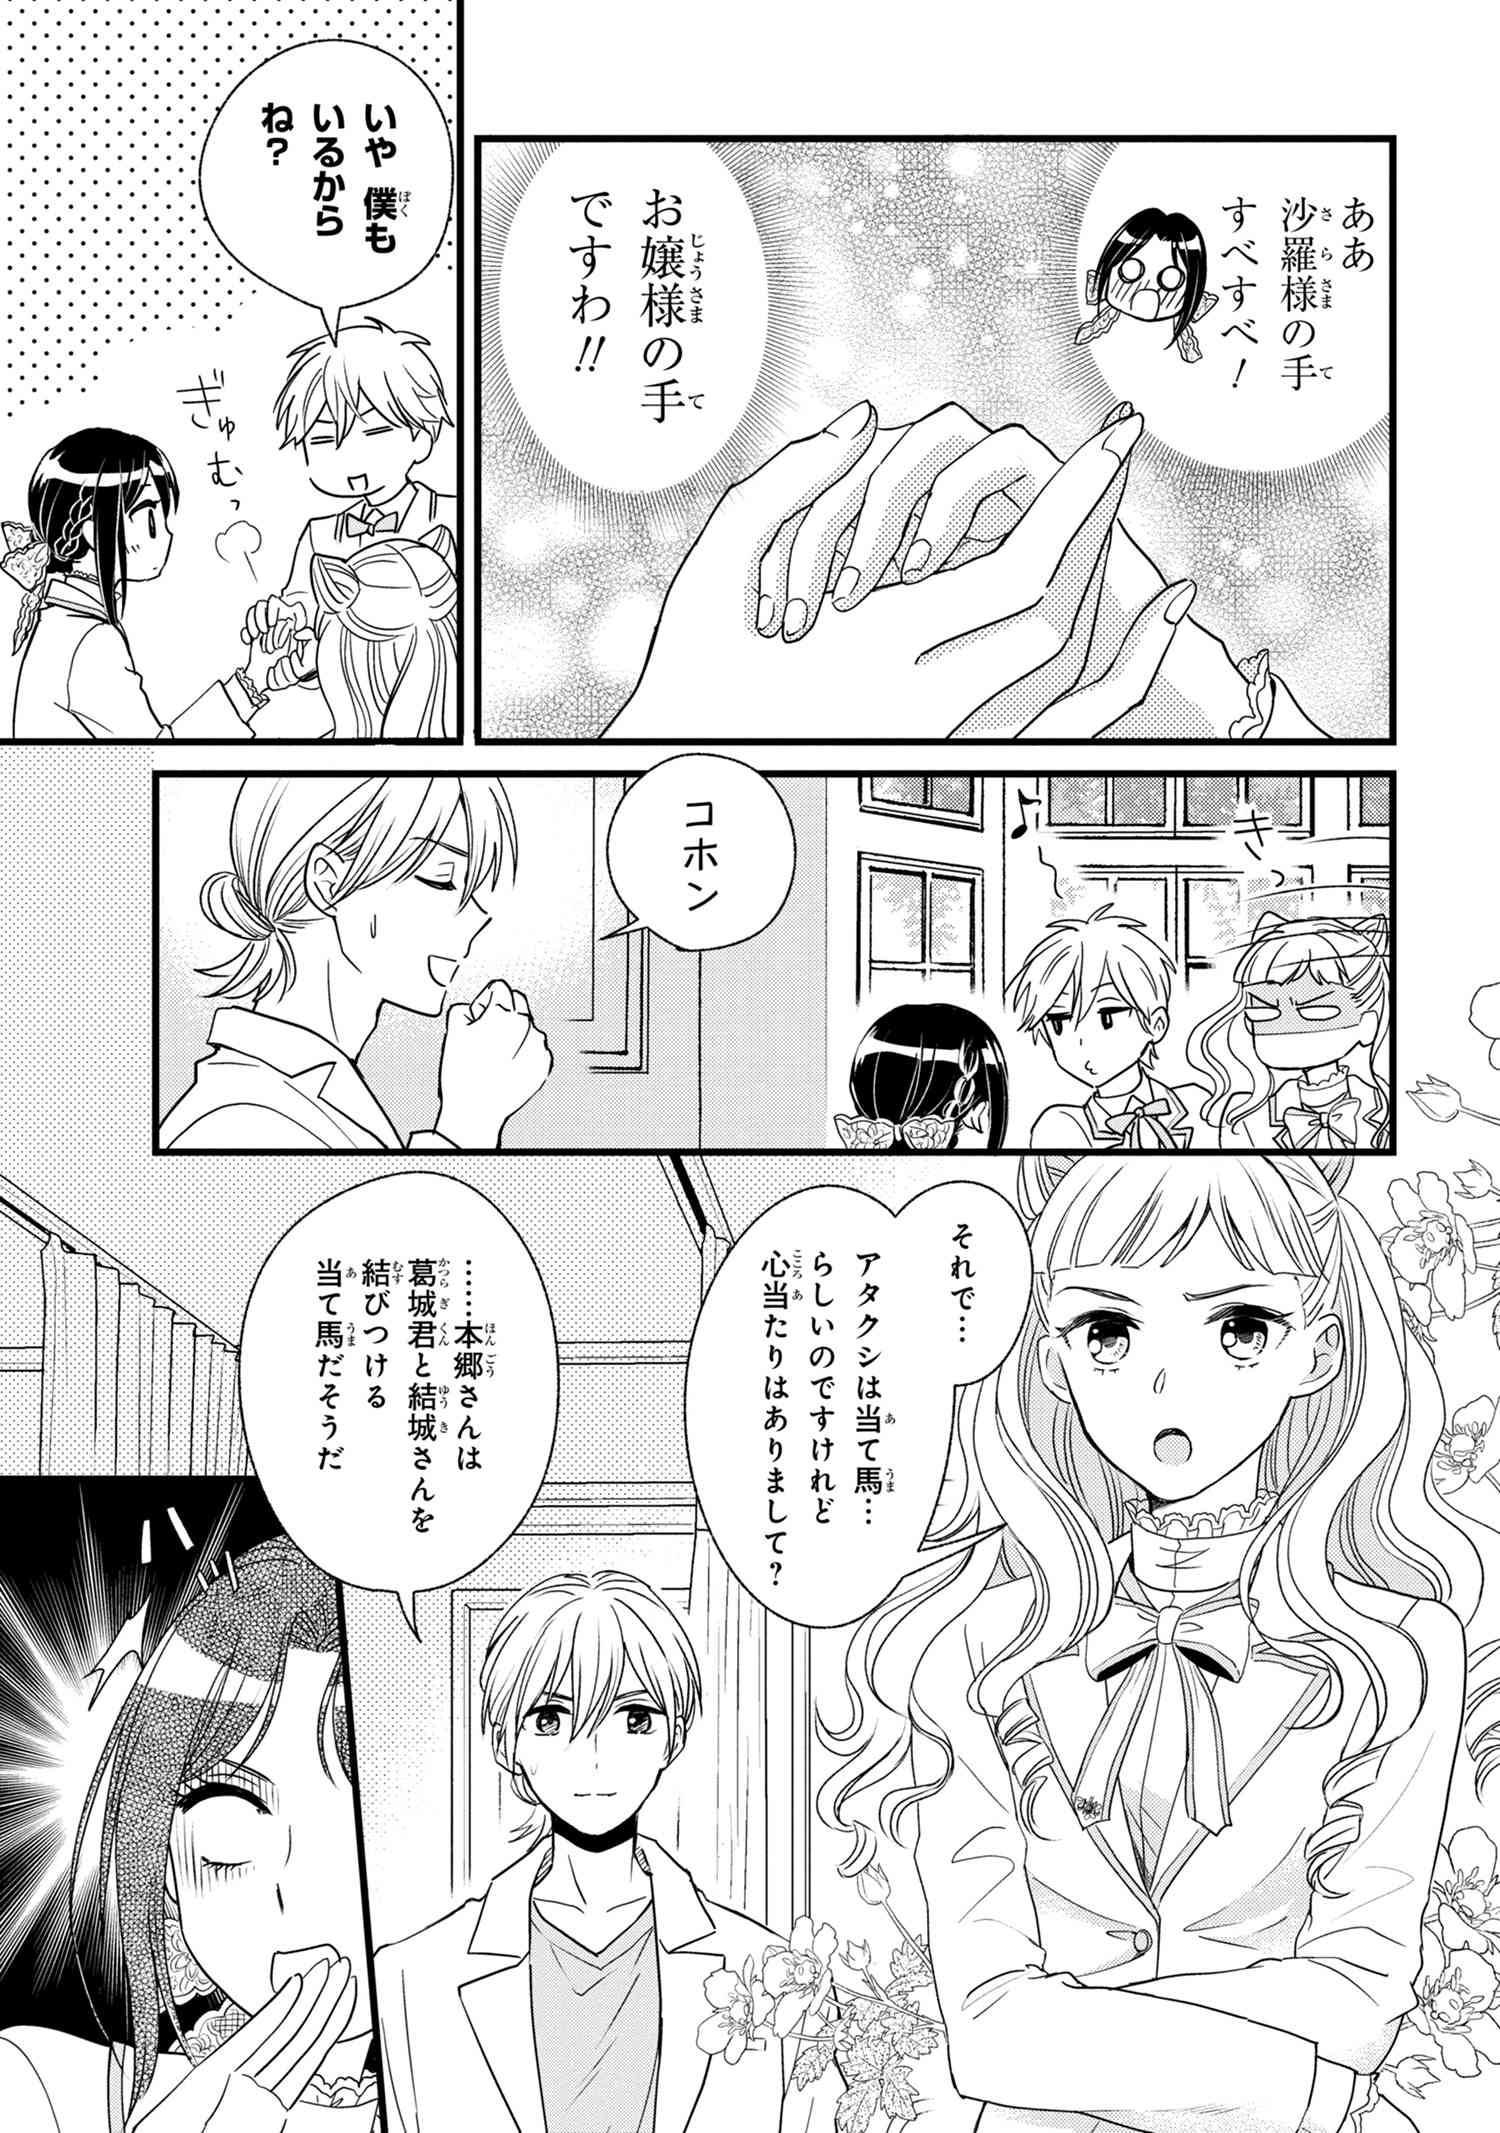 Reiko no Fuugi Akuyaku Reijou to Yobarete imasu ga, tada no Binbou Musume desu - Chapter 3-3 - Page 2